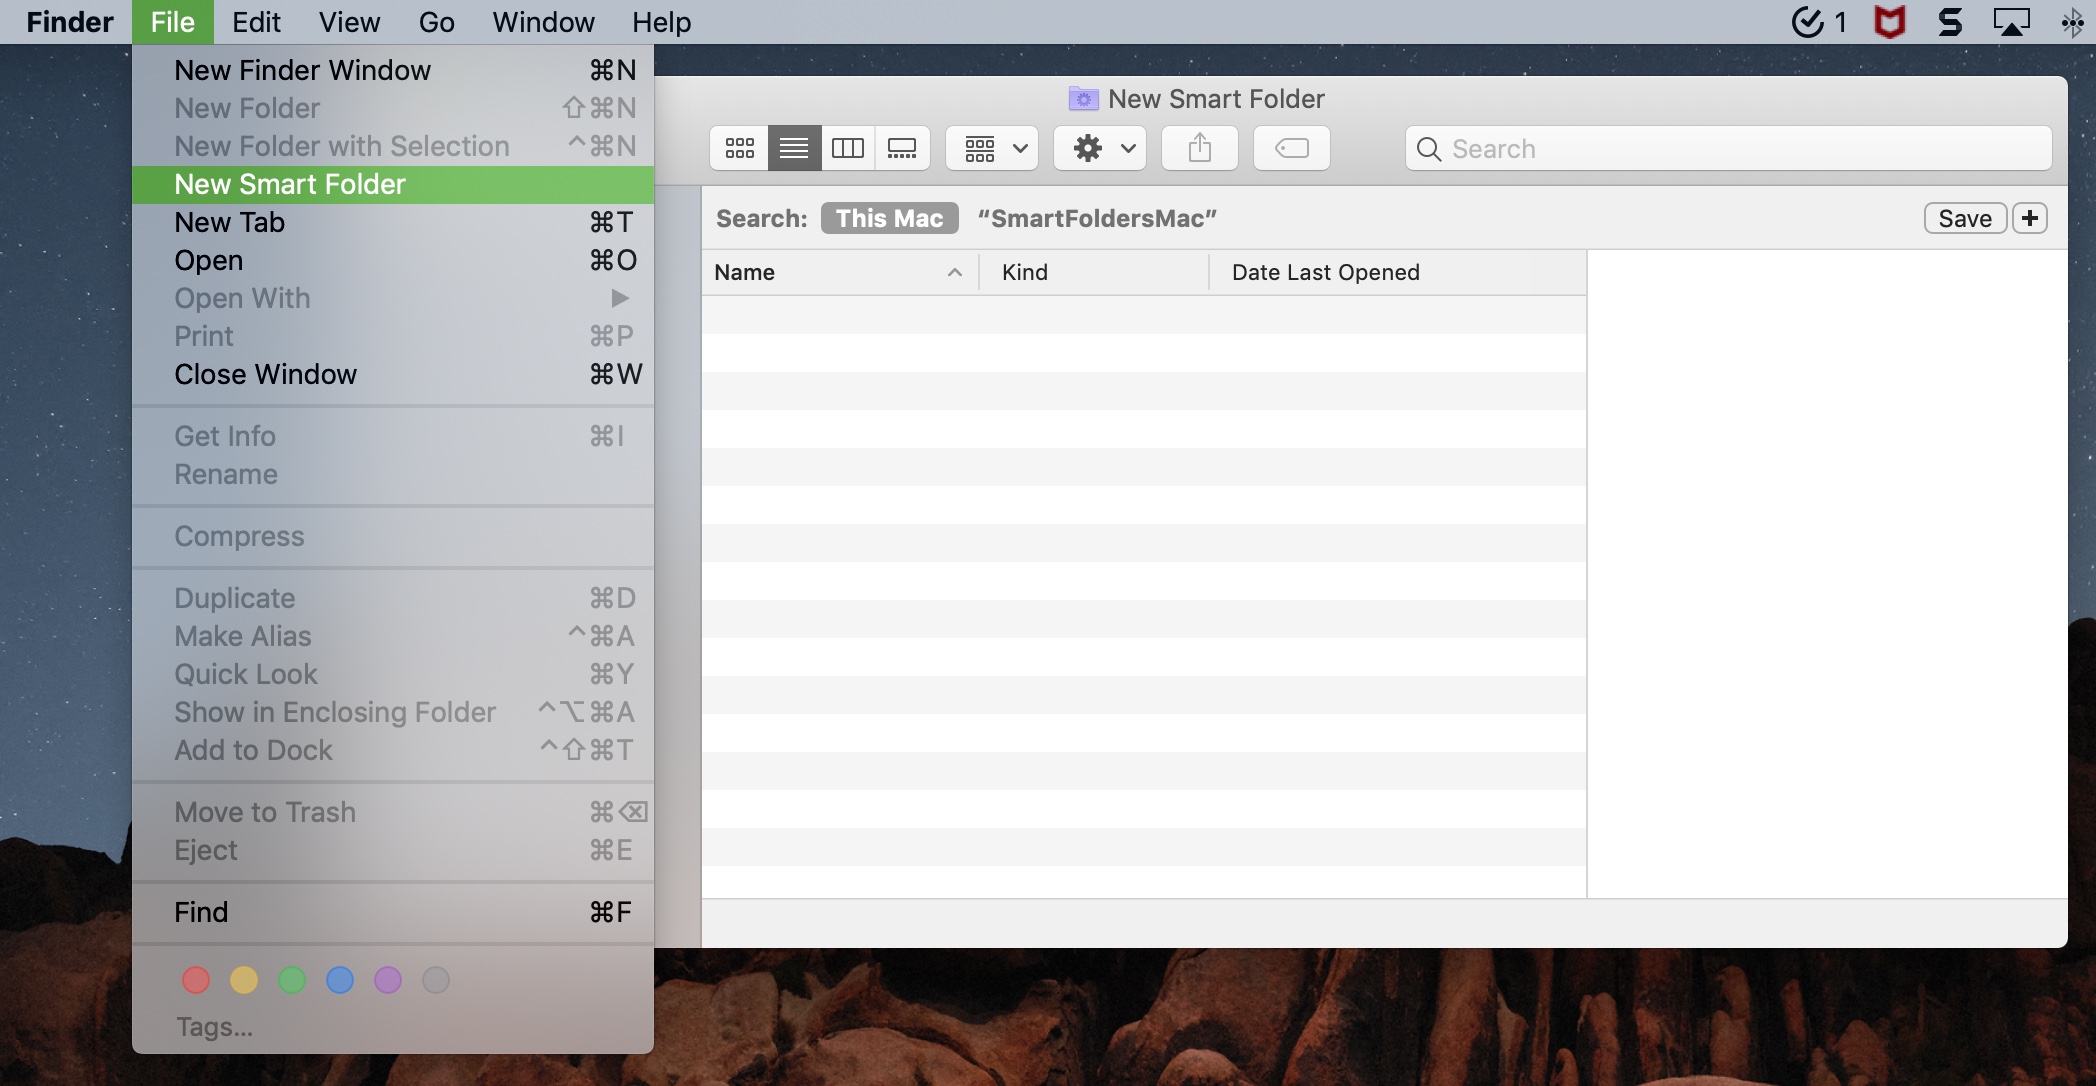 Create an env file for mac